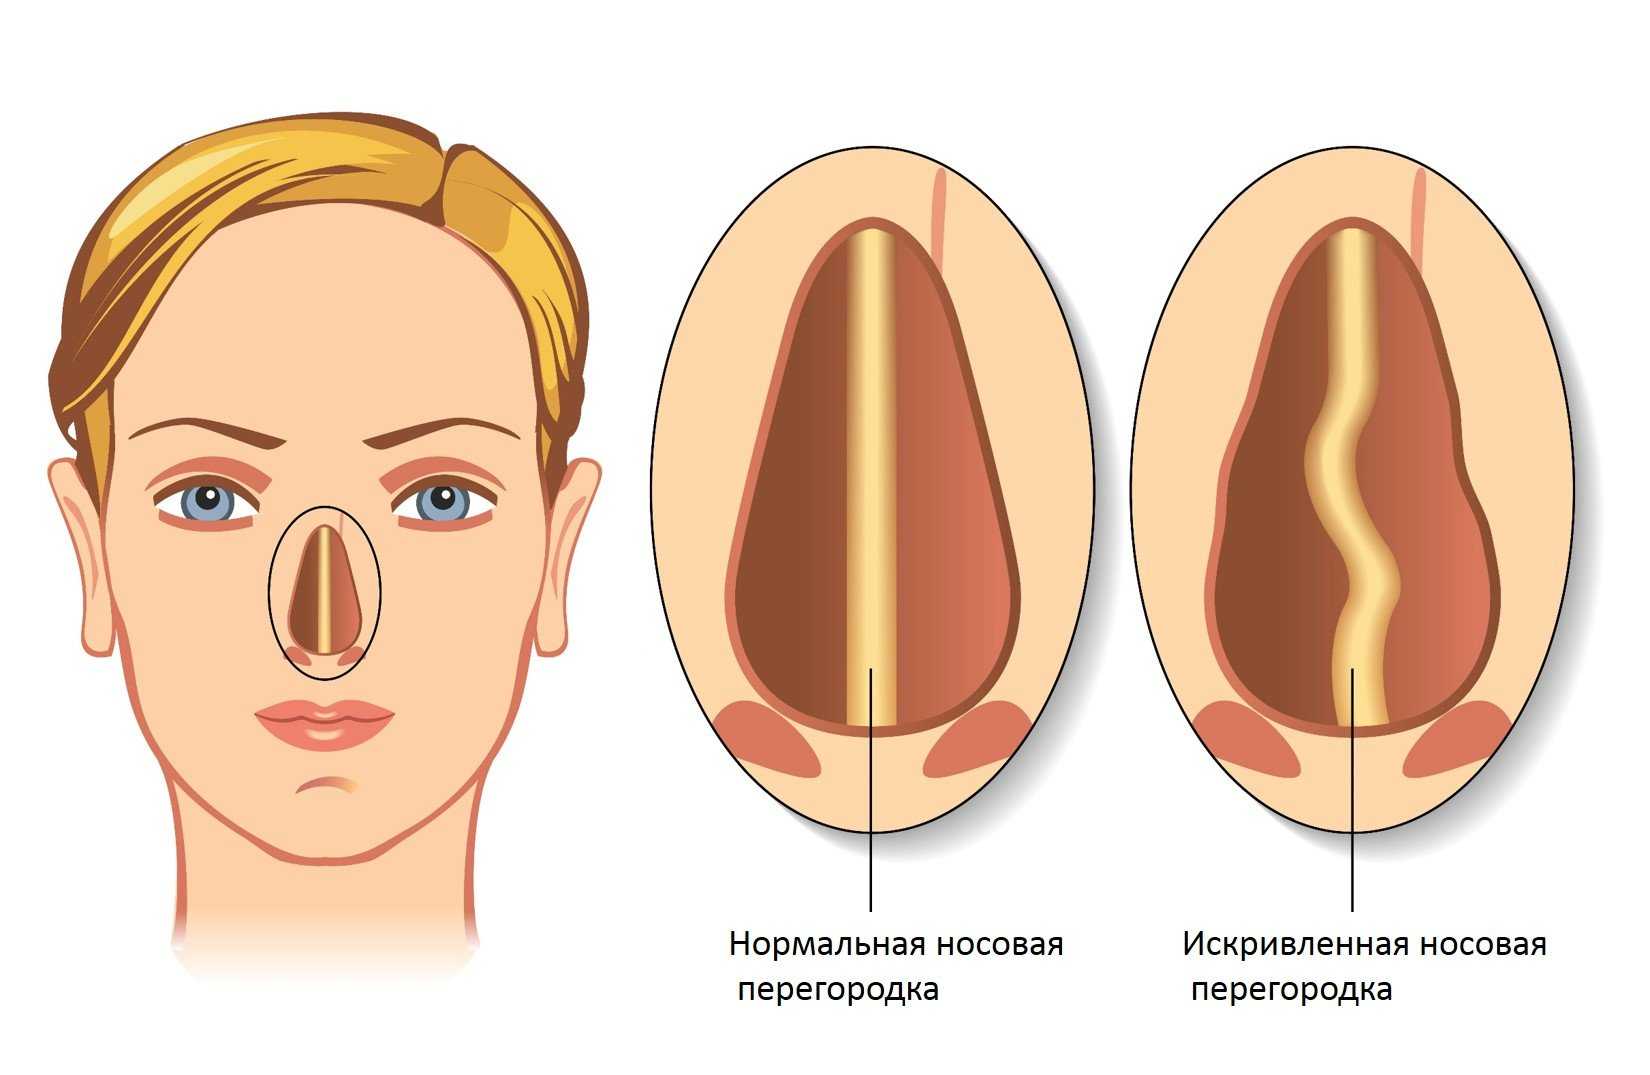 Для чего используется и кому назначается риноманометрия Как проходит диагностика при искривлении носовой перегородки и перед ринопластикой Рекомендации врача и меры безопасности